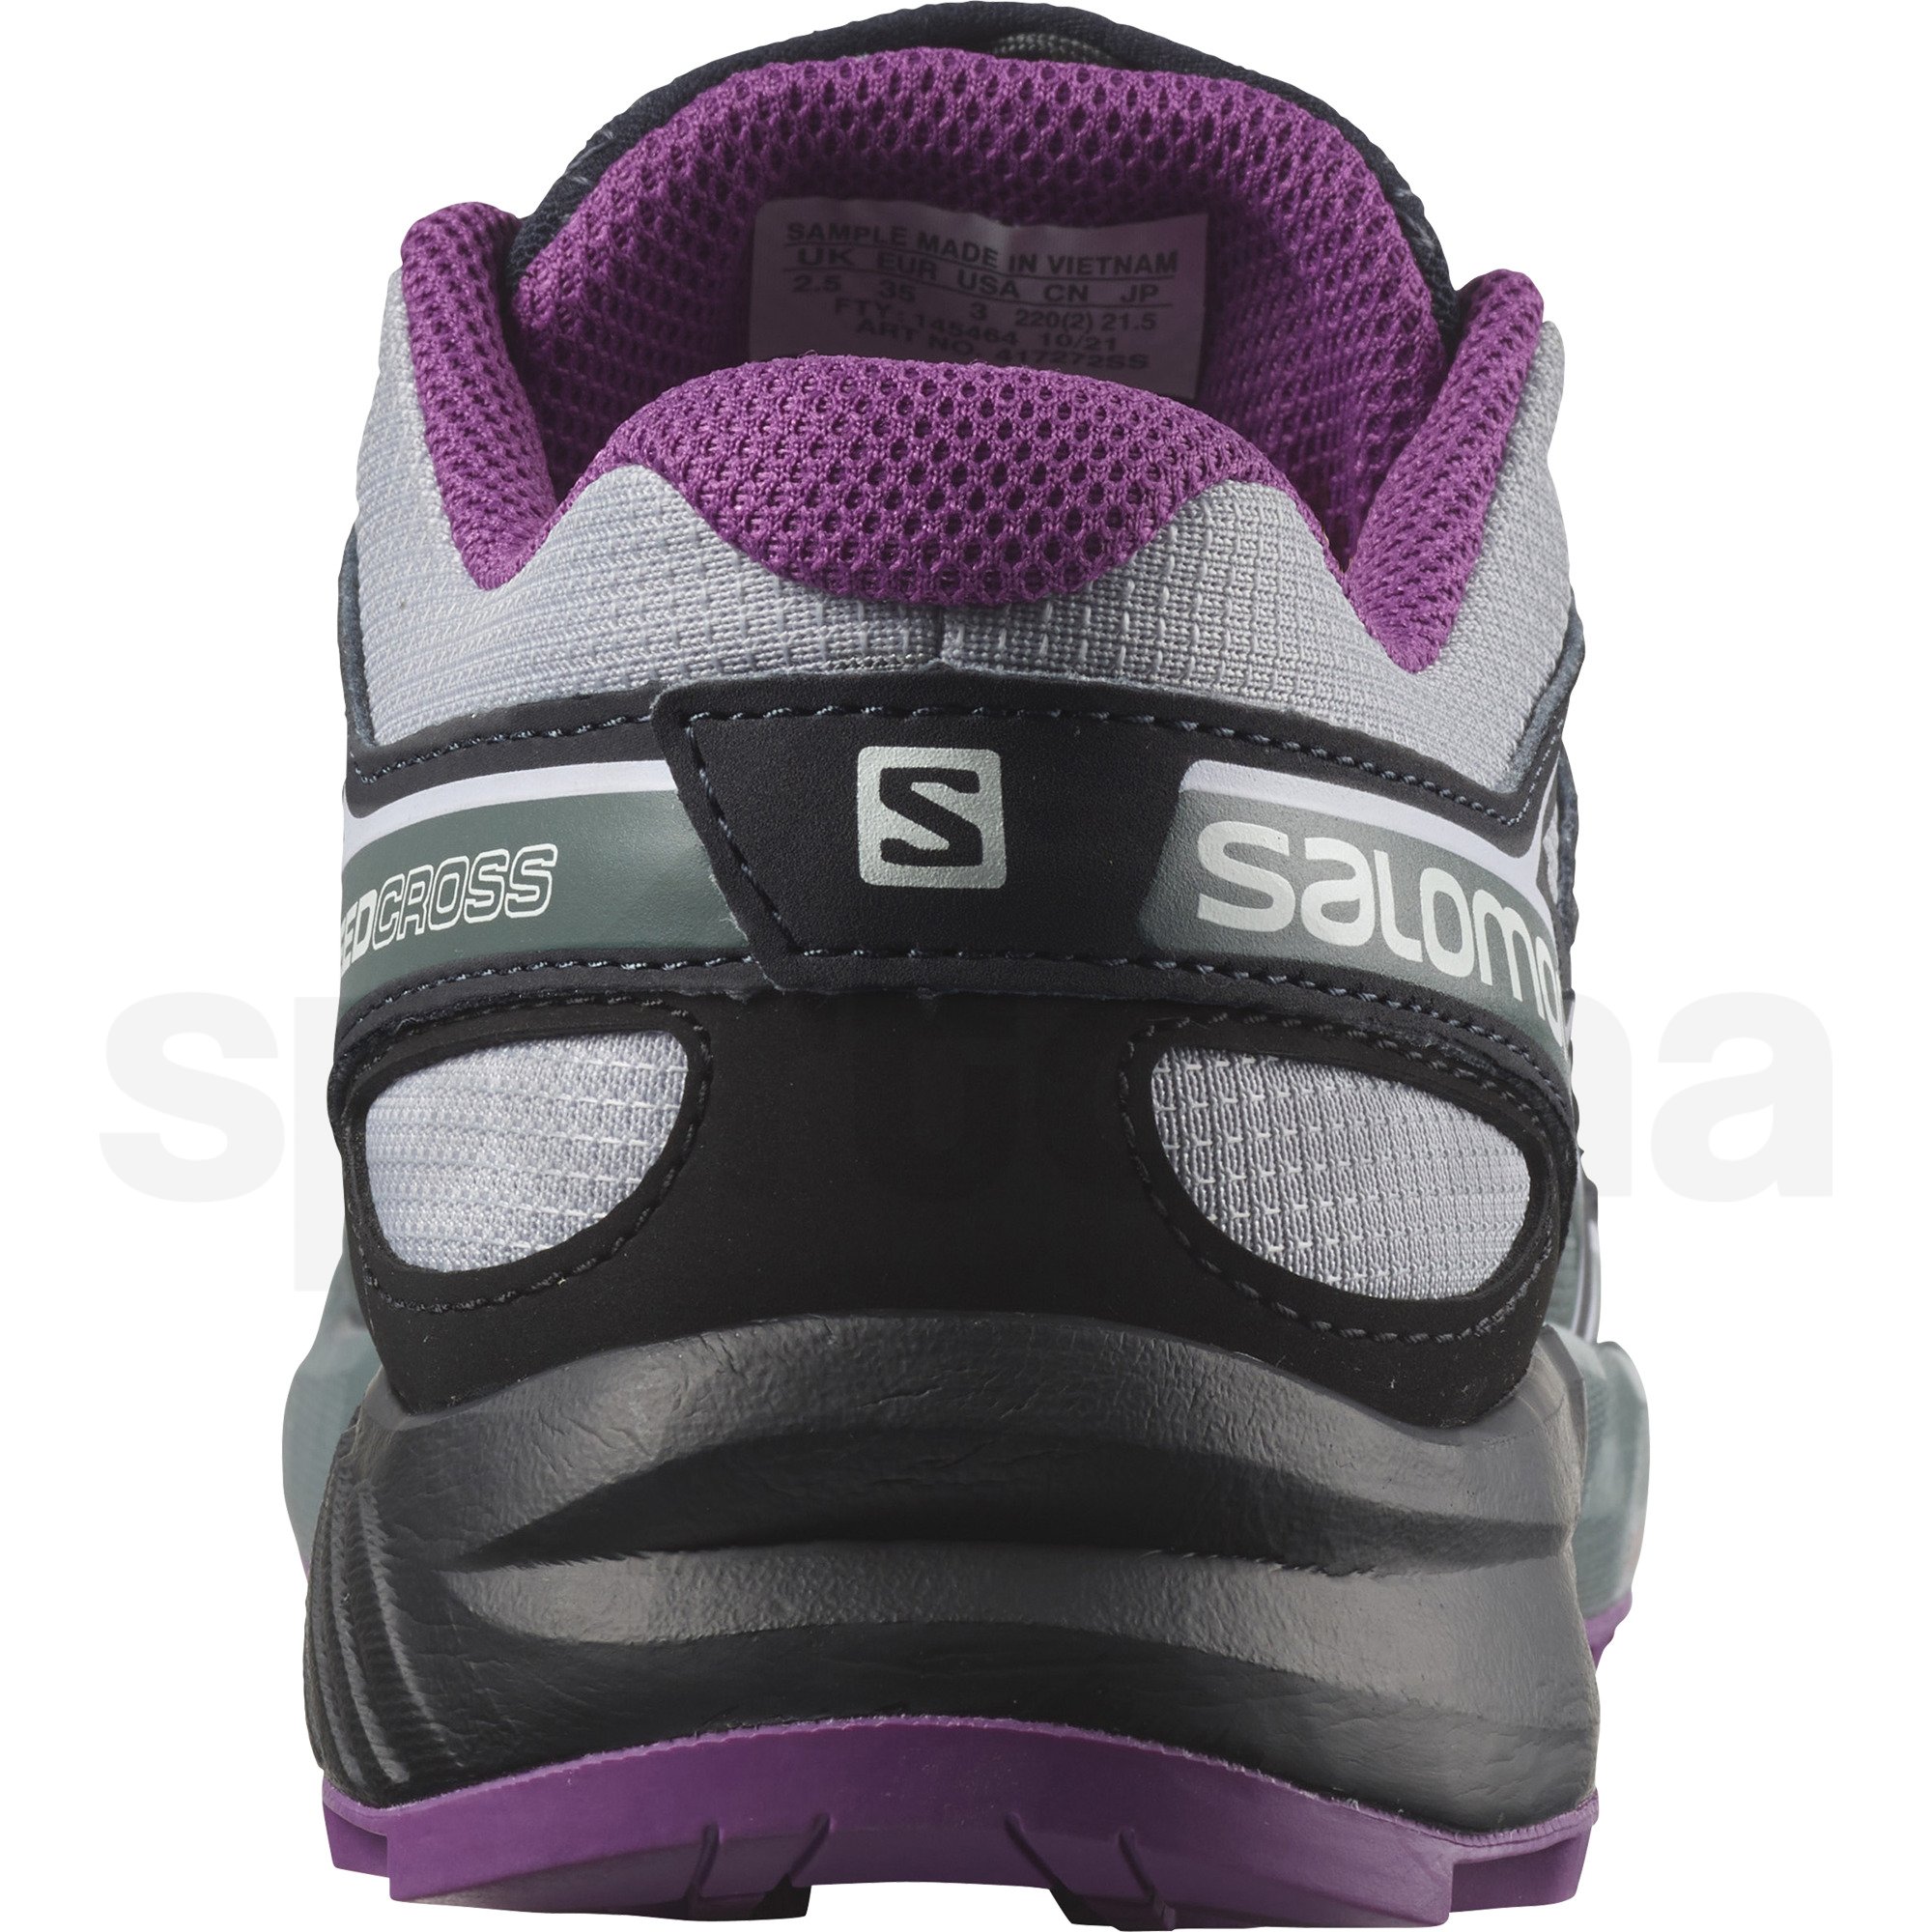 Obuv Salomon Speedcross J - šedá/černá/fialová